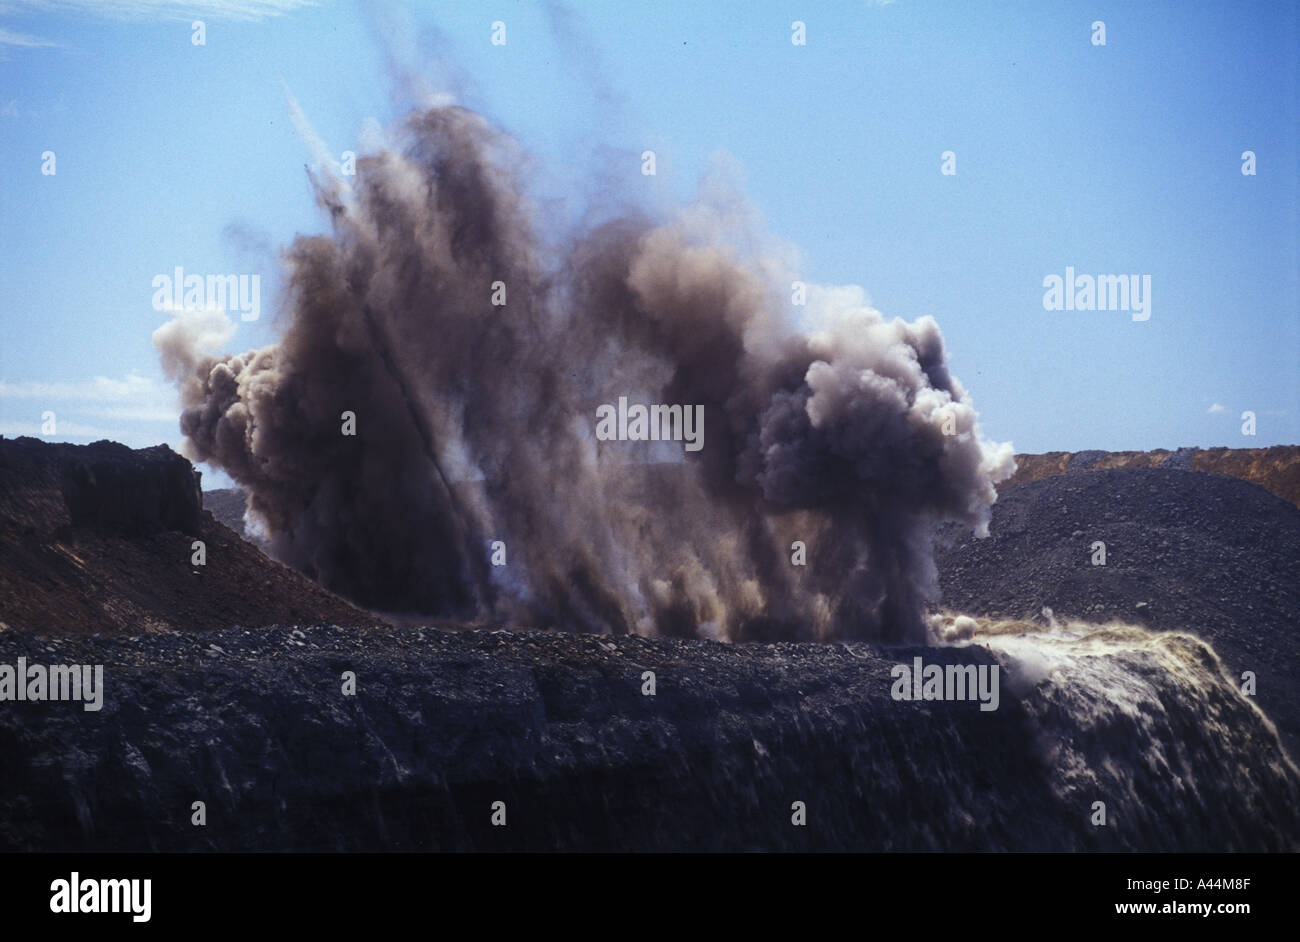 overburden blast coal mine Central Queensland sip 3593 Stock Photo